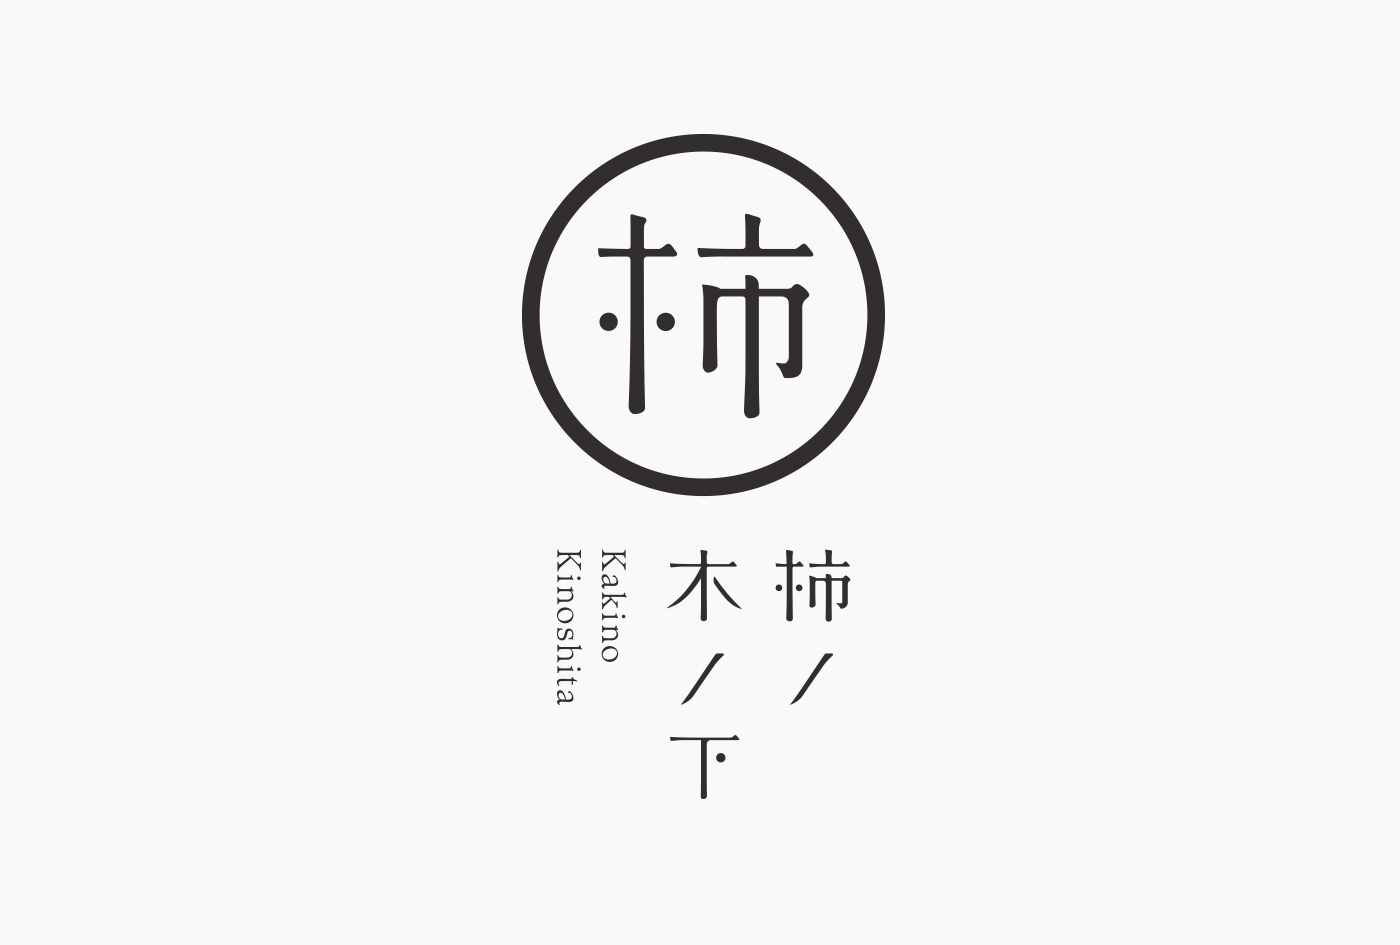 ギャラリー 和風 gallery japanese style kanji 漢字 chinise character